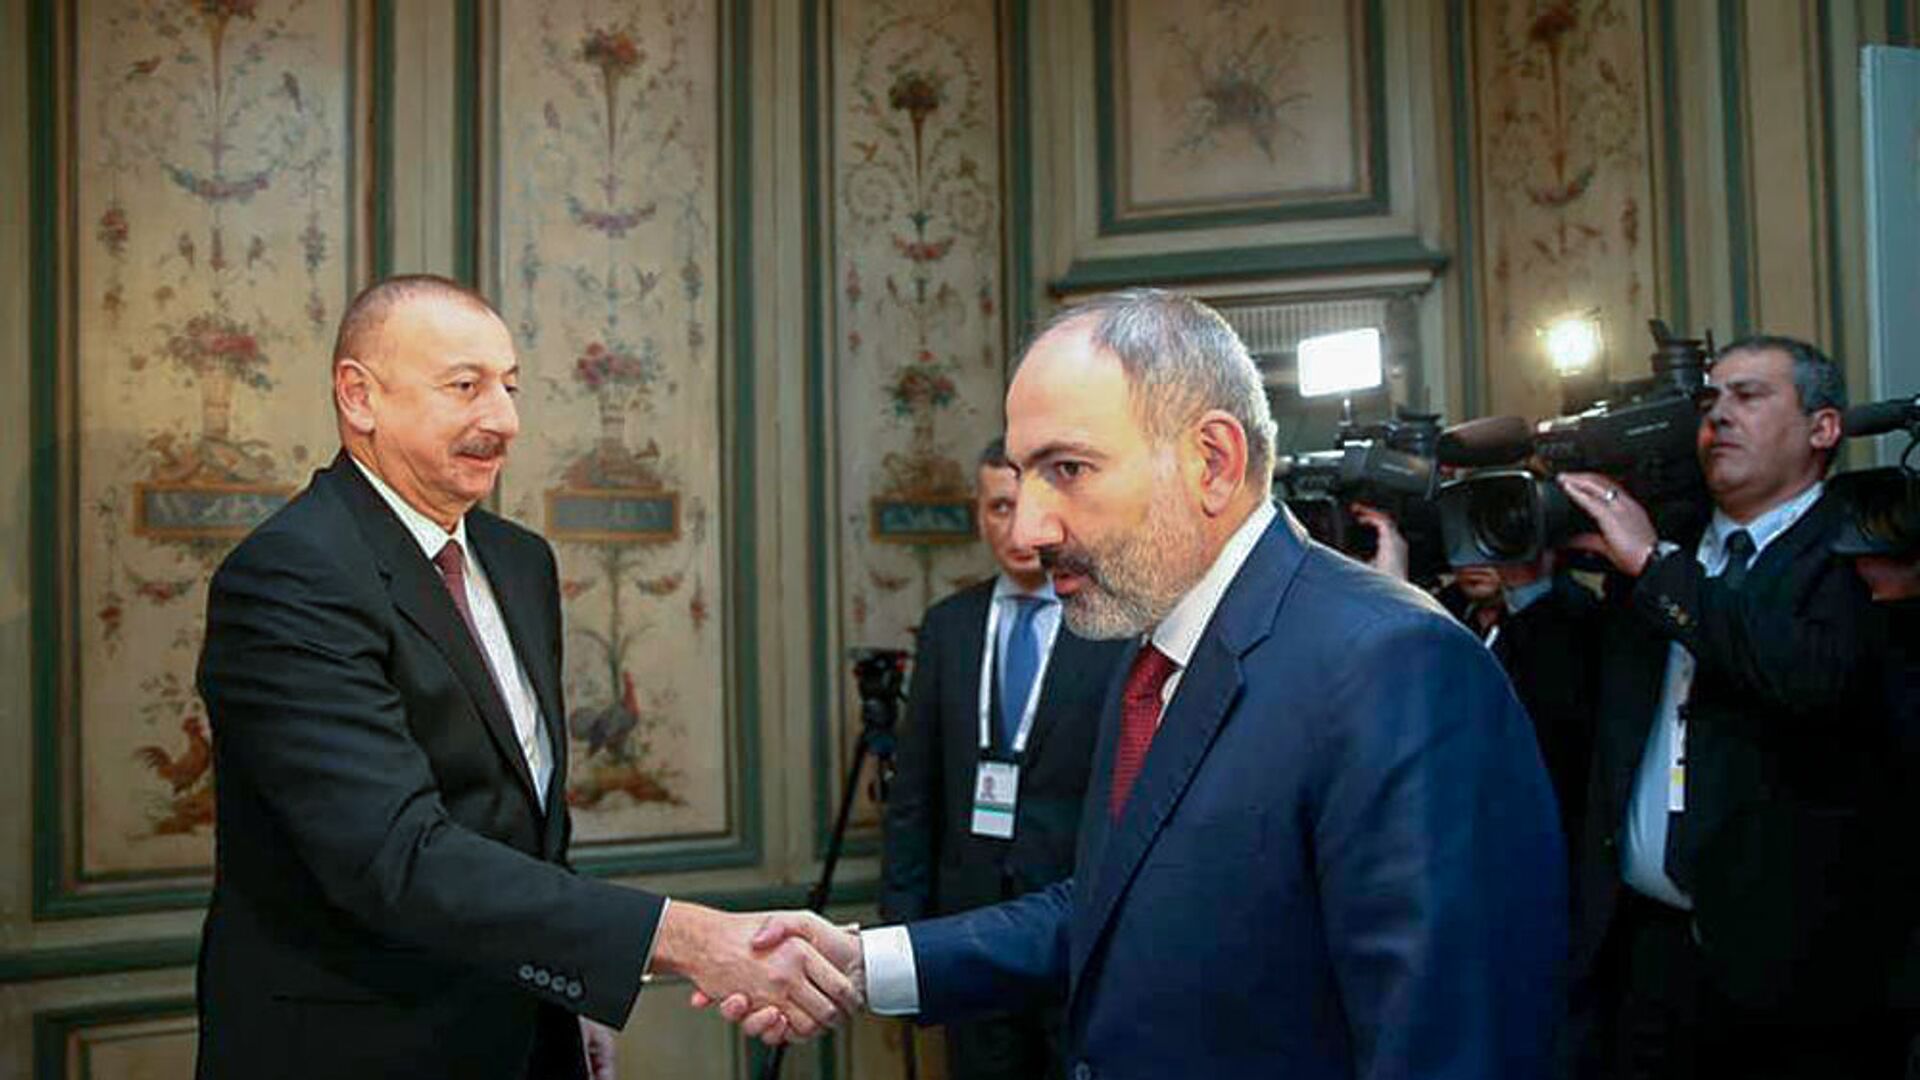 Баку отказывается от договоренностей, чтобы продолжить агрессивную политику - Пашинян